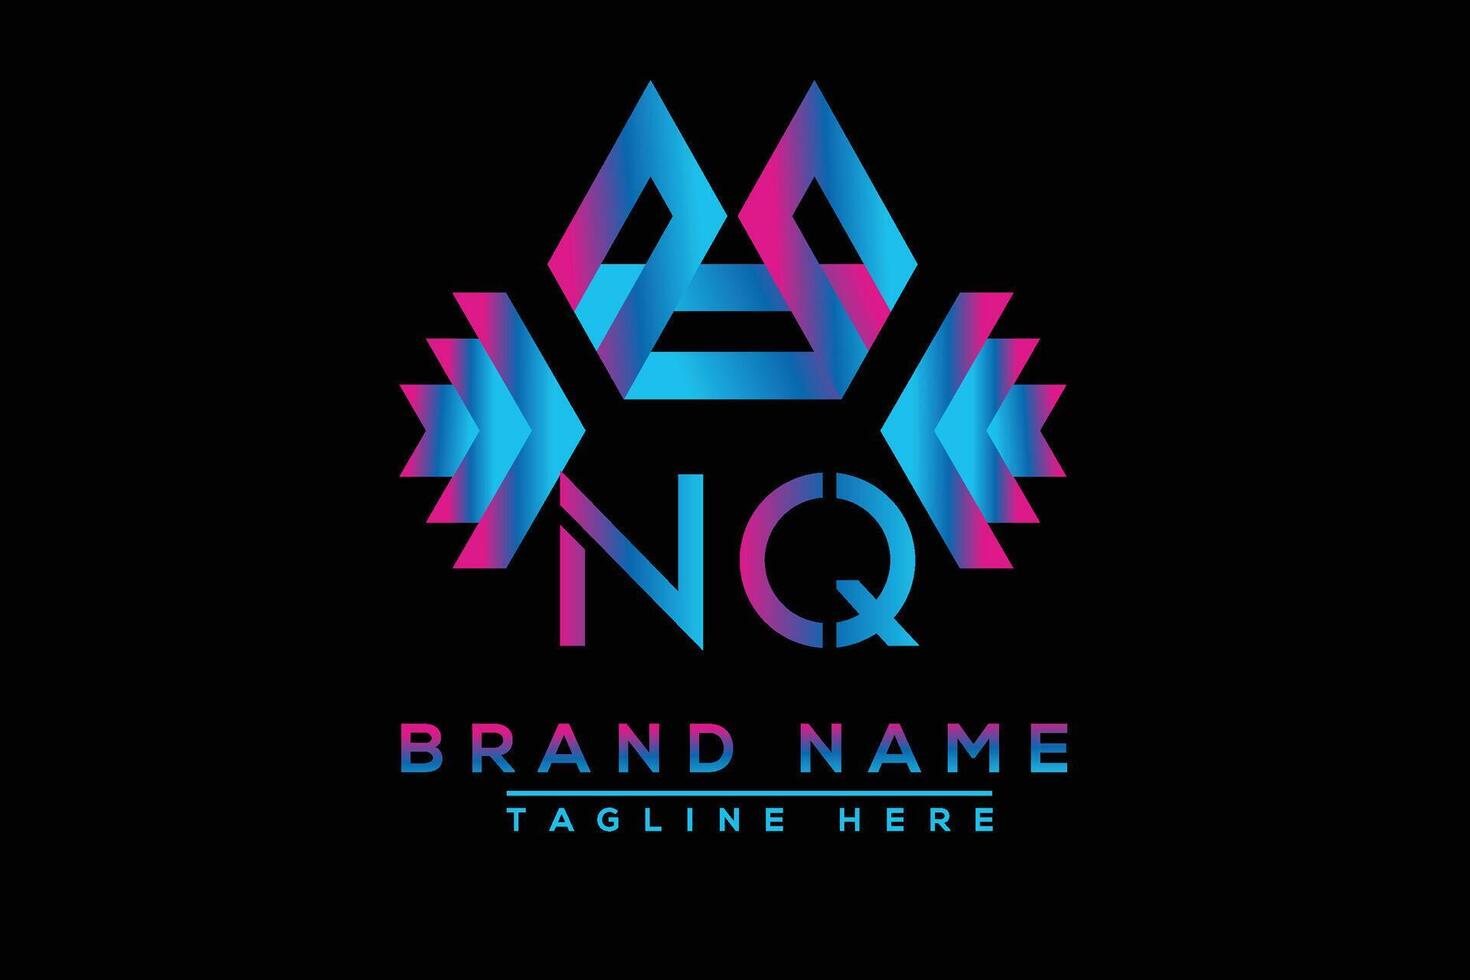 NQ letter logo design. Vector logo design for business.